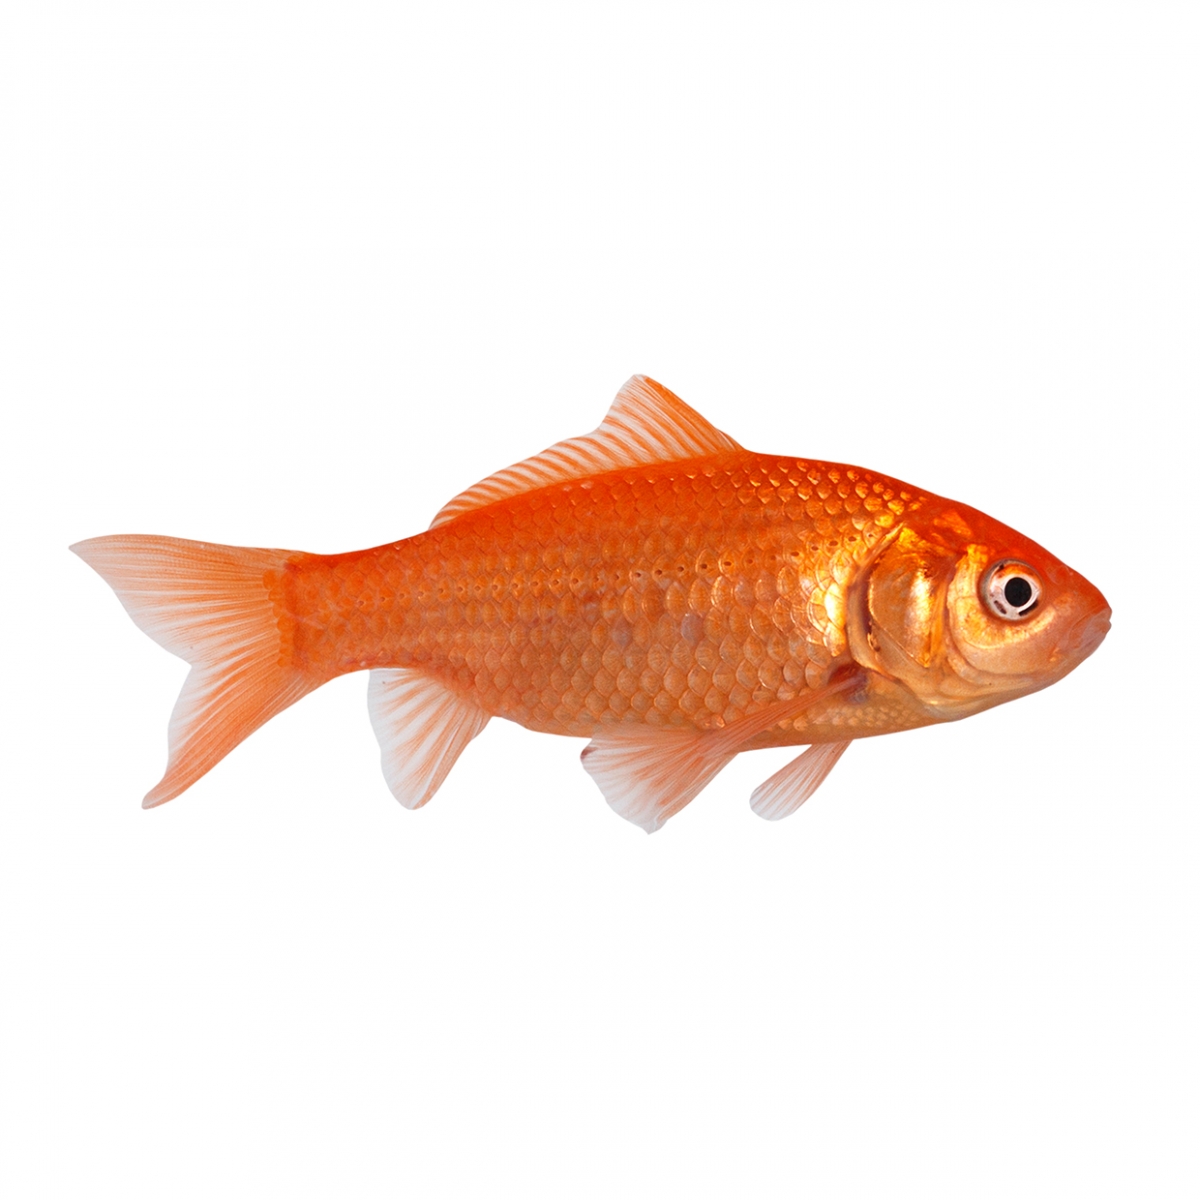 Imagen en la que se ve un pez goldfish en perspectiva lateral